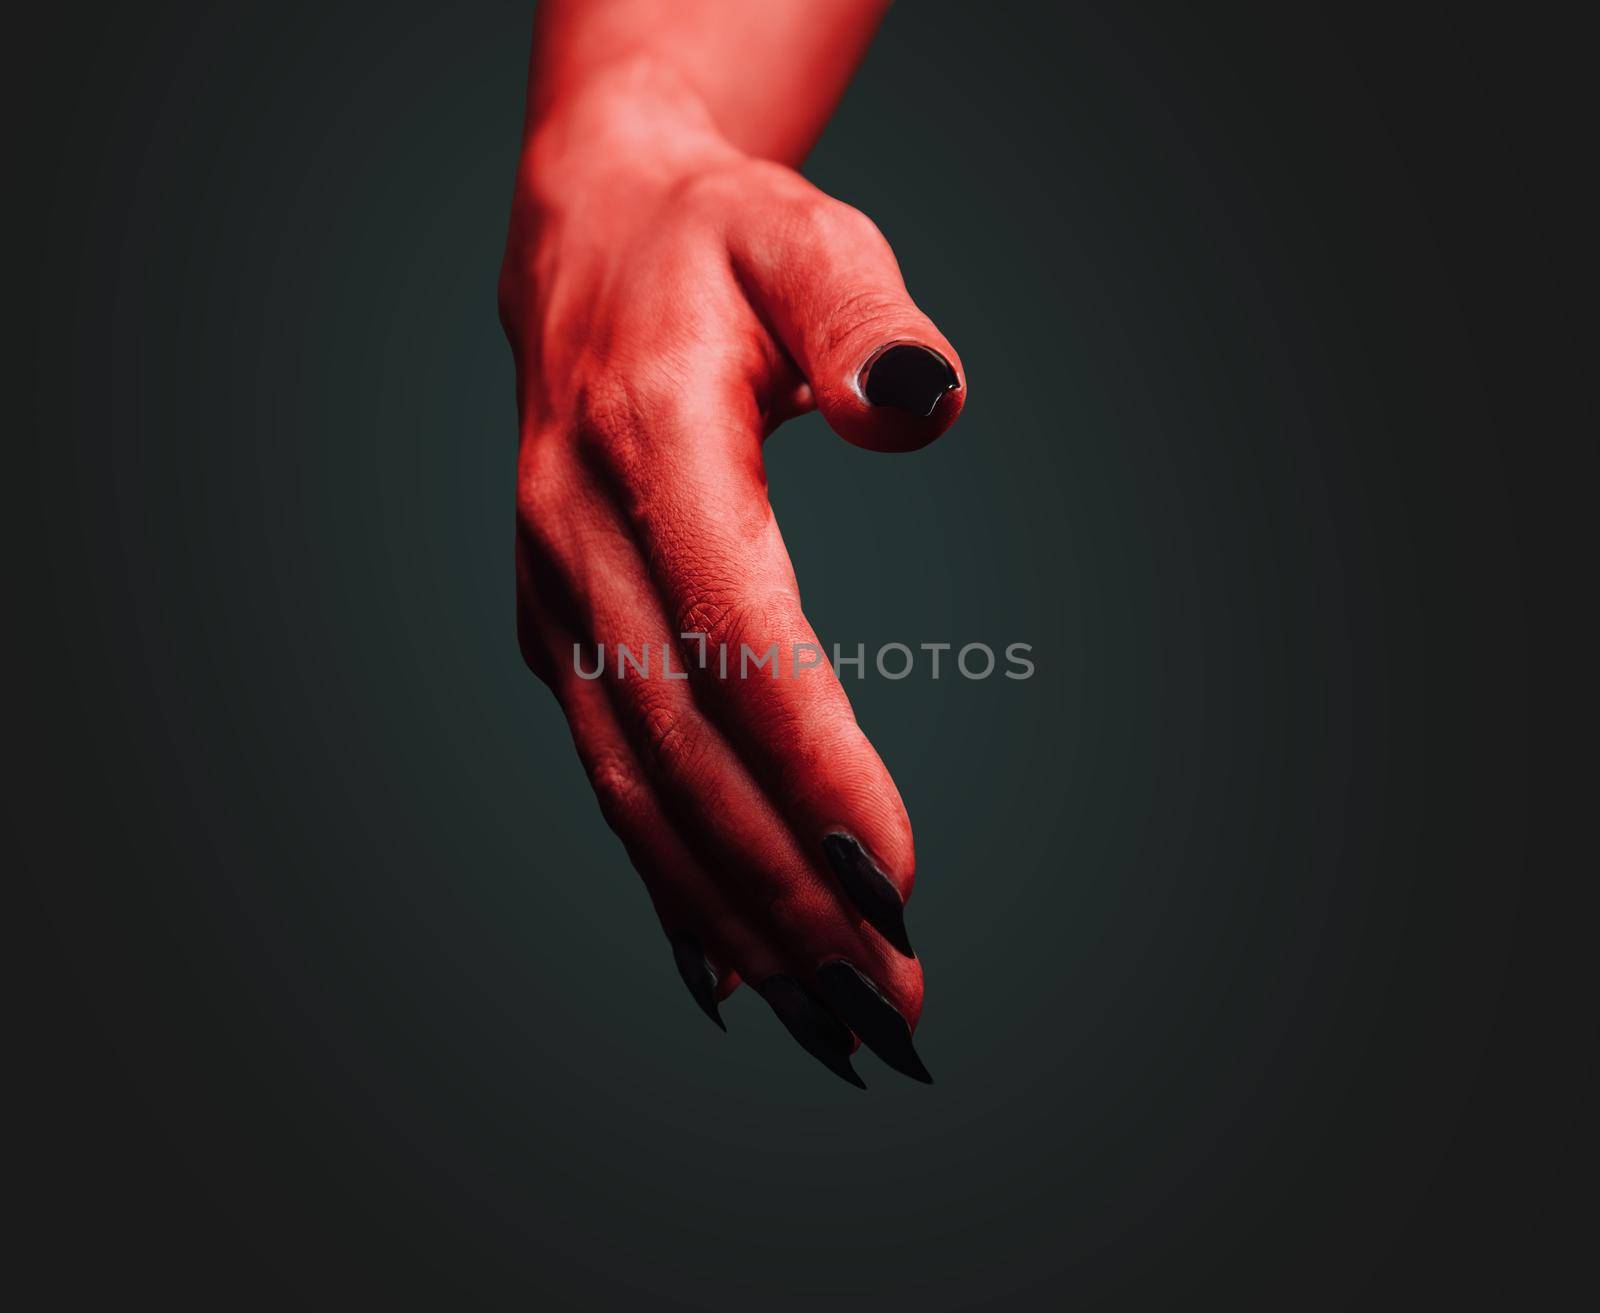 Red demon hand with handshake gesture on dark background. Halloween or horror theme